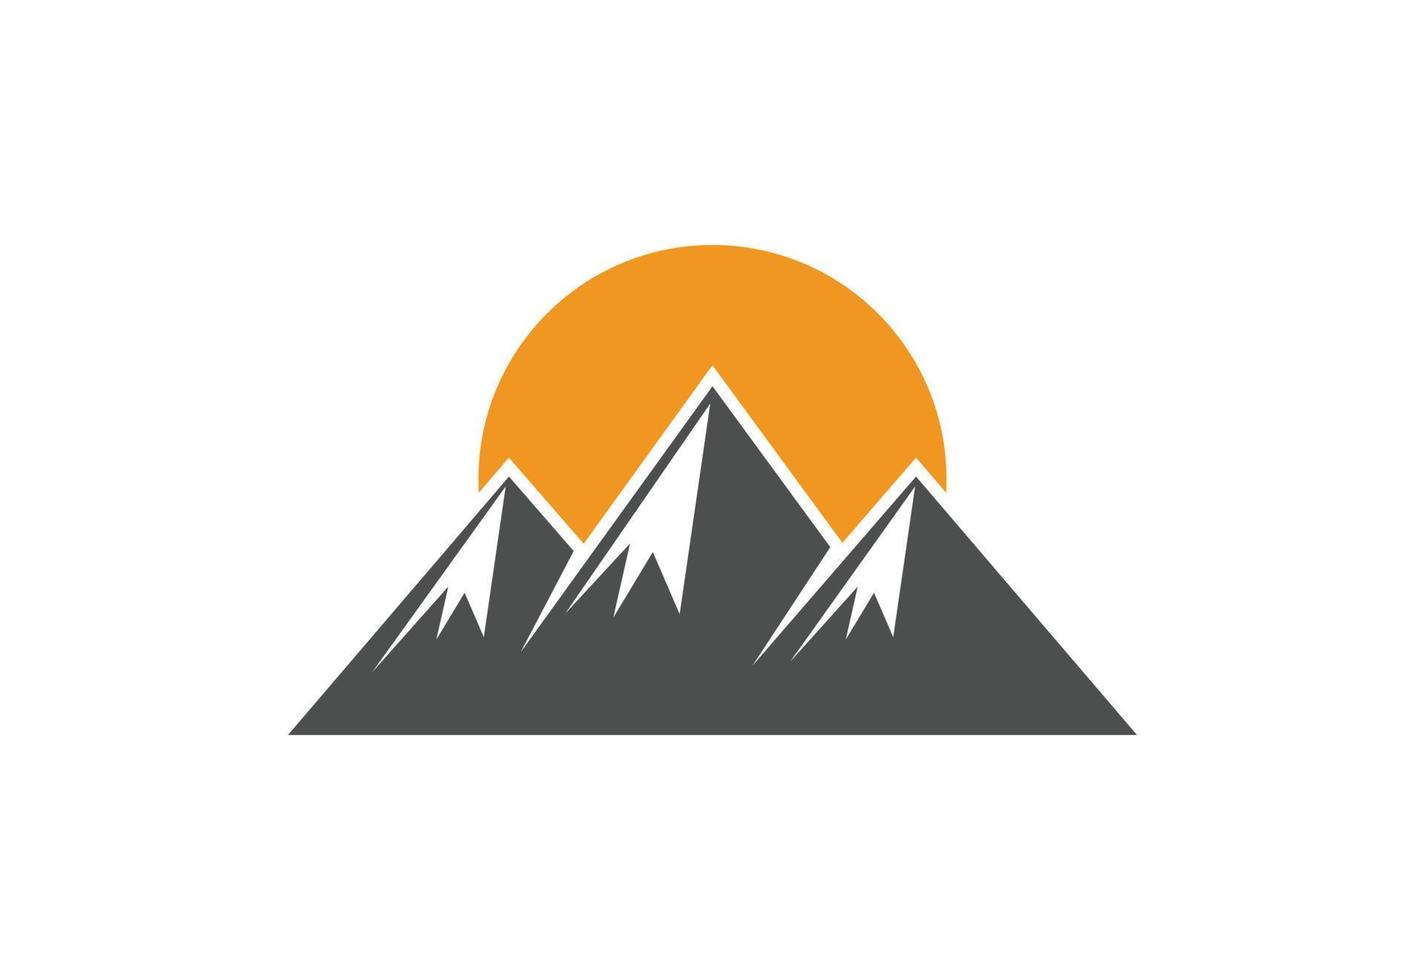 Mountain peak summit logo design, Vector illustration